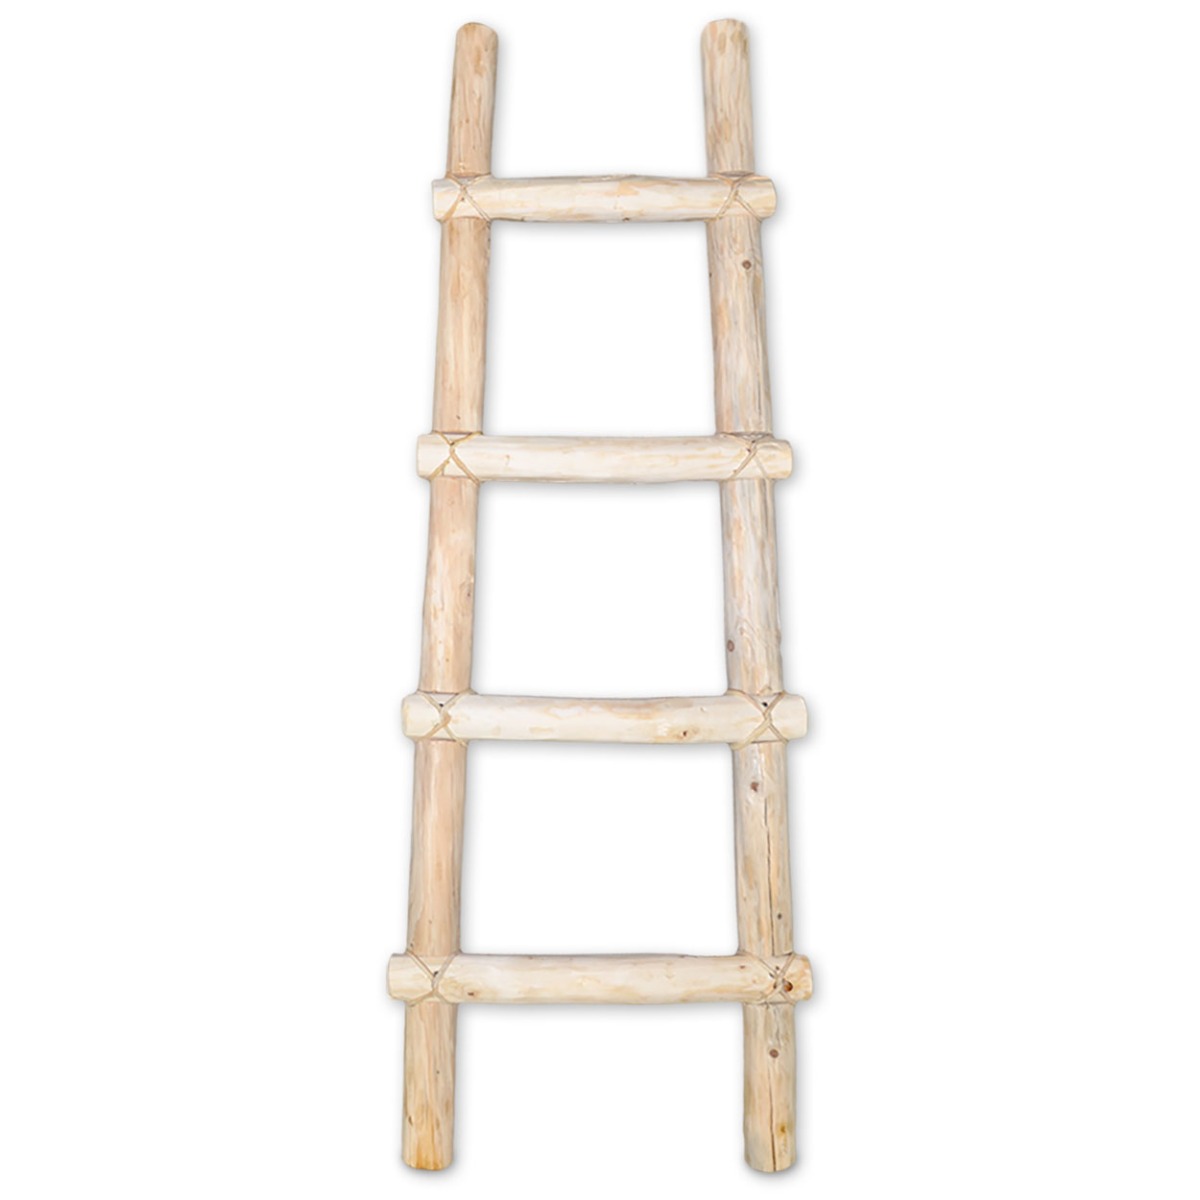 460348 - 4ft Decorative Wooden Kiva Log Ladder